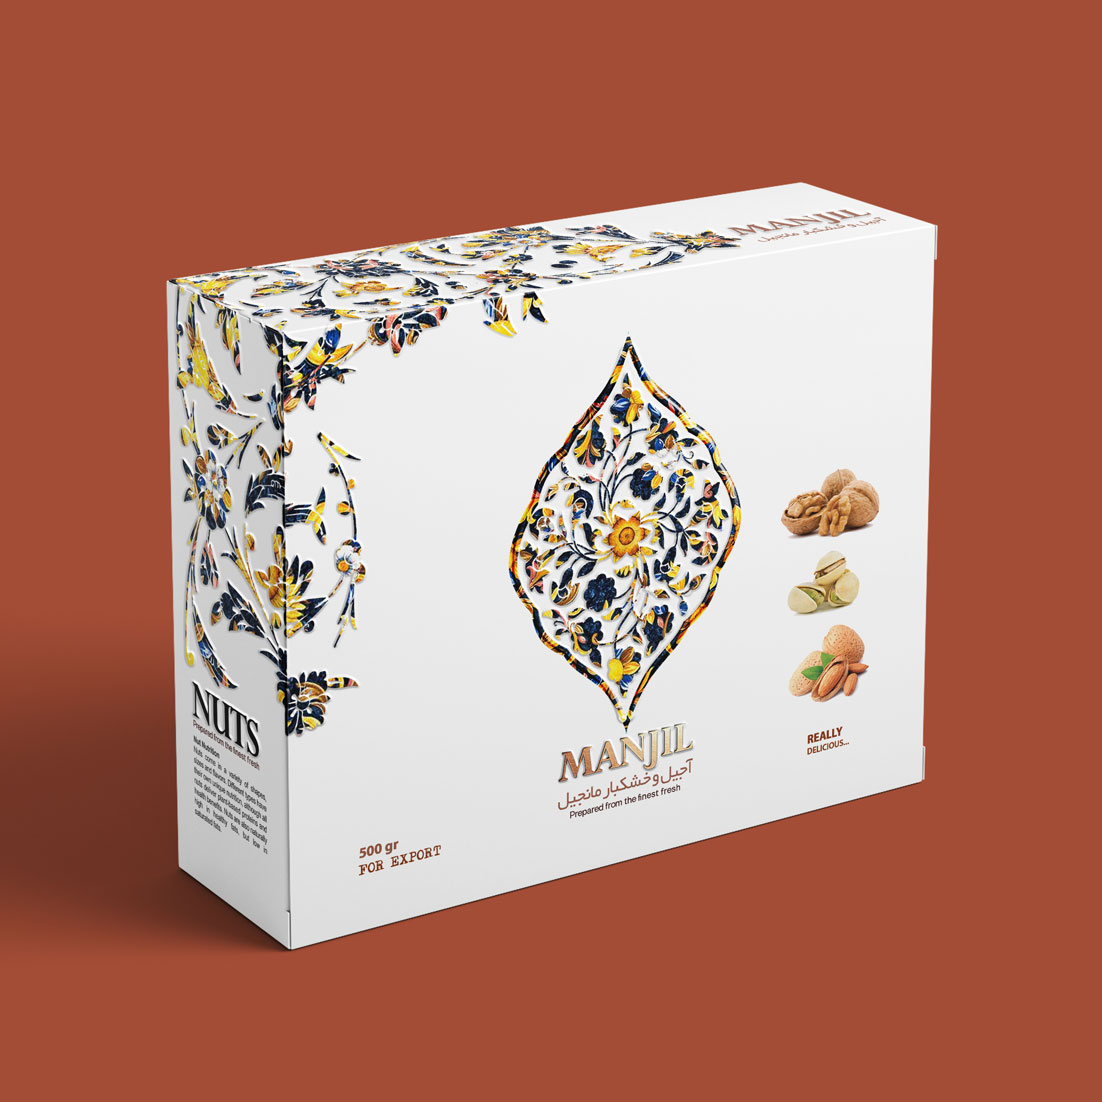 Taha Fakouri Creat New Nuts Packaging Design, Manjil Nuts